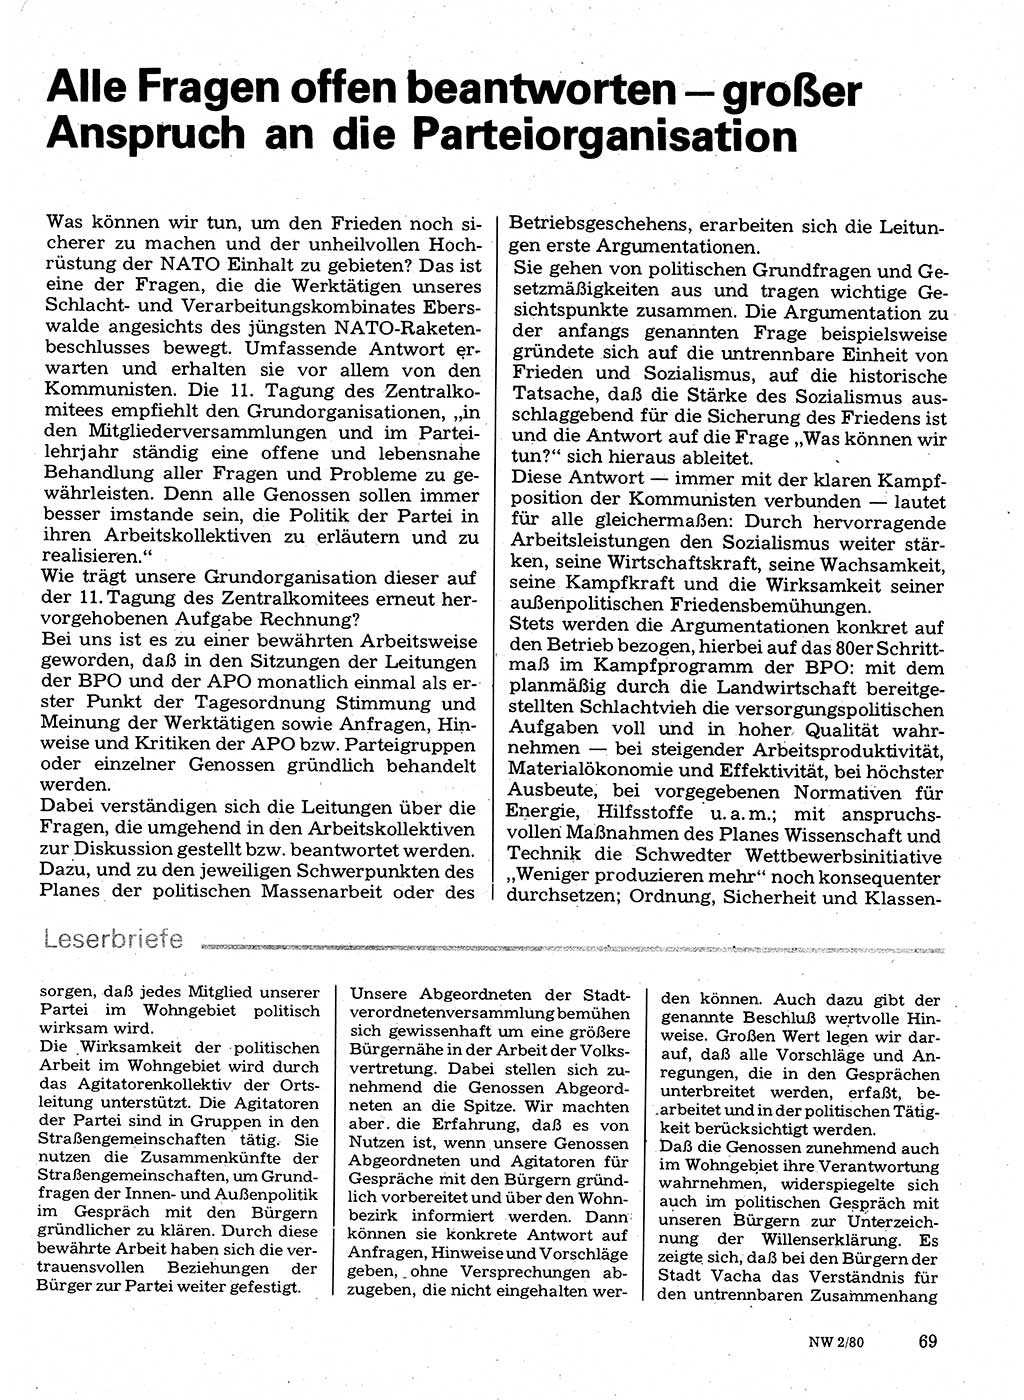 Neuer Weg (NW), Organ des Zentralkomitees (ZK) der SED (Sozialistische Einheitspartei Deutschlands) für Fragen des Parteilebens, 35. Jahrgang [Deutsche Demokratische Republik (DDR)] 1980, Seite 69 (NW ZK SED DDR 1980, S. 69)